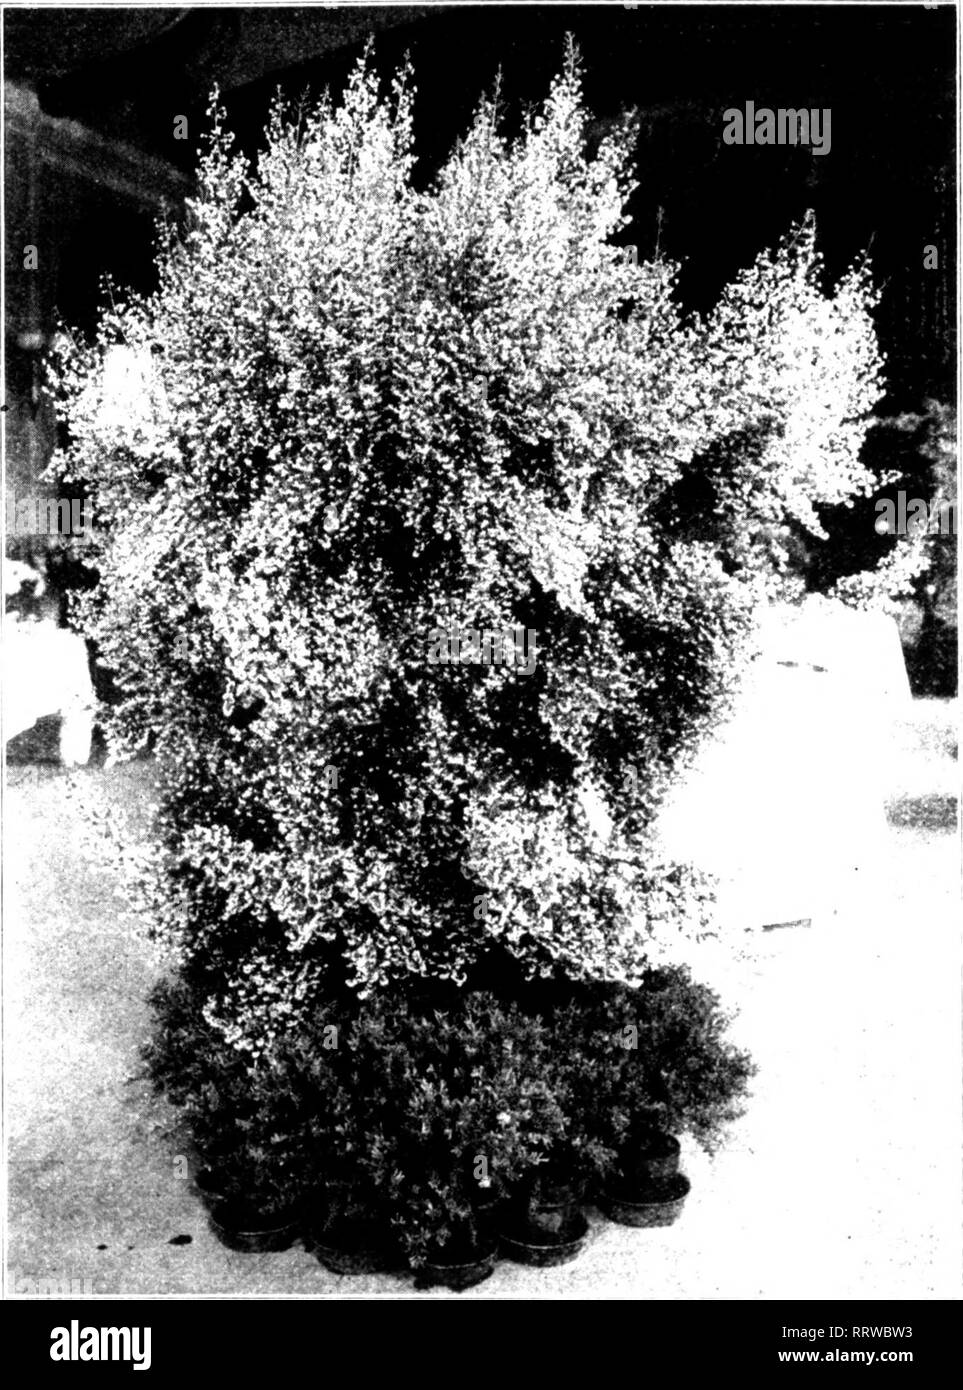 . Florists' review [microform]. Floriculture. Mahc'h 1'.», I'.tH. The Florists' Review 21 Tlu' i Acacia. spc&lt;anicii plant Weld (lardcii. liist; Mrs. ('. (;. Wfld. sccniid; W.dd (Jardrii, tliird. ITard wckkIimI fjiccnlinnx' plants, six specimens • itlicr tlian azaleas, ae.-ieias and ericas -Weld (larden, lirst; W. W. i:di.'ar Vo., secund. llaril wuiided yri-enlKinse plants. spiiimeii idaiit- W. W. Kdfiar Cu., Inst. Itainlder ruses, ilirce pl.-mts. distinct varieties - W. W. i;di;ar Ce., se,(,nd. (Iruiip (d ruses, not less tiiaii twi'lve ]il.int&lt; W. W. i:d;;ar Ce., lirst; .Miss ('. Warren, Stock Photo